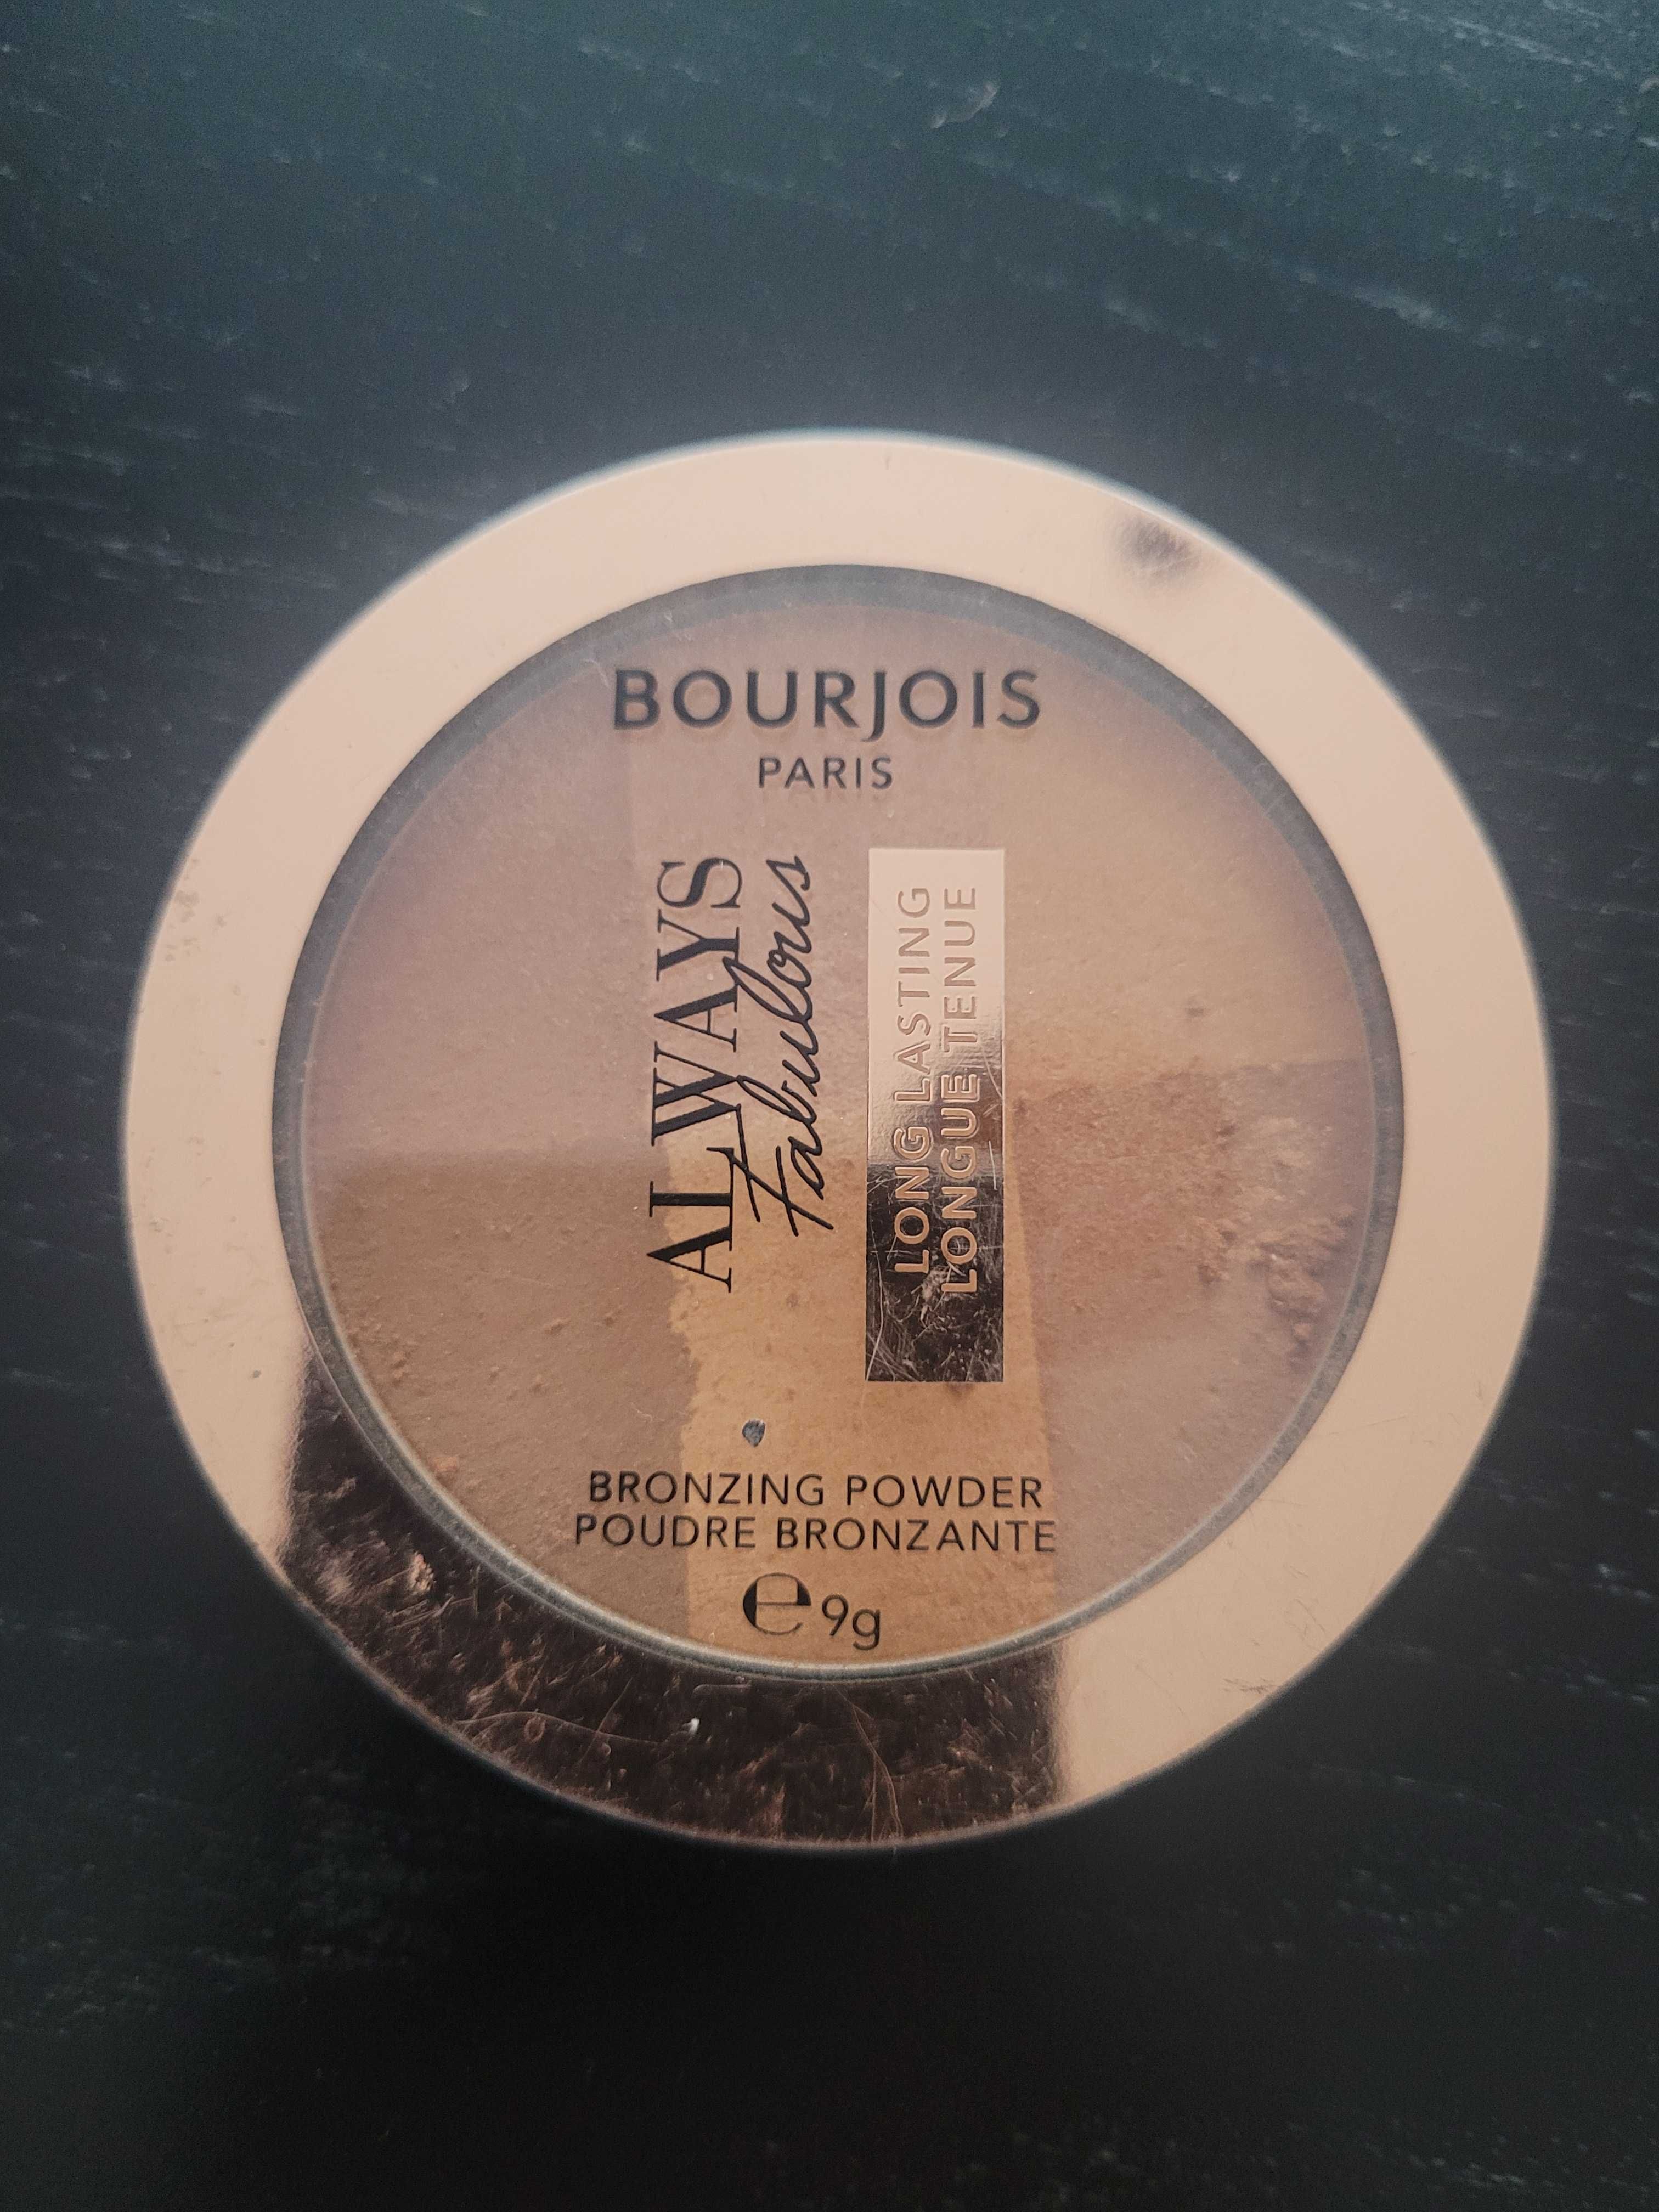 Bourjois Always Fabulous
puder brązujący Pastel 9 g